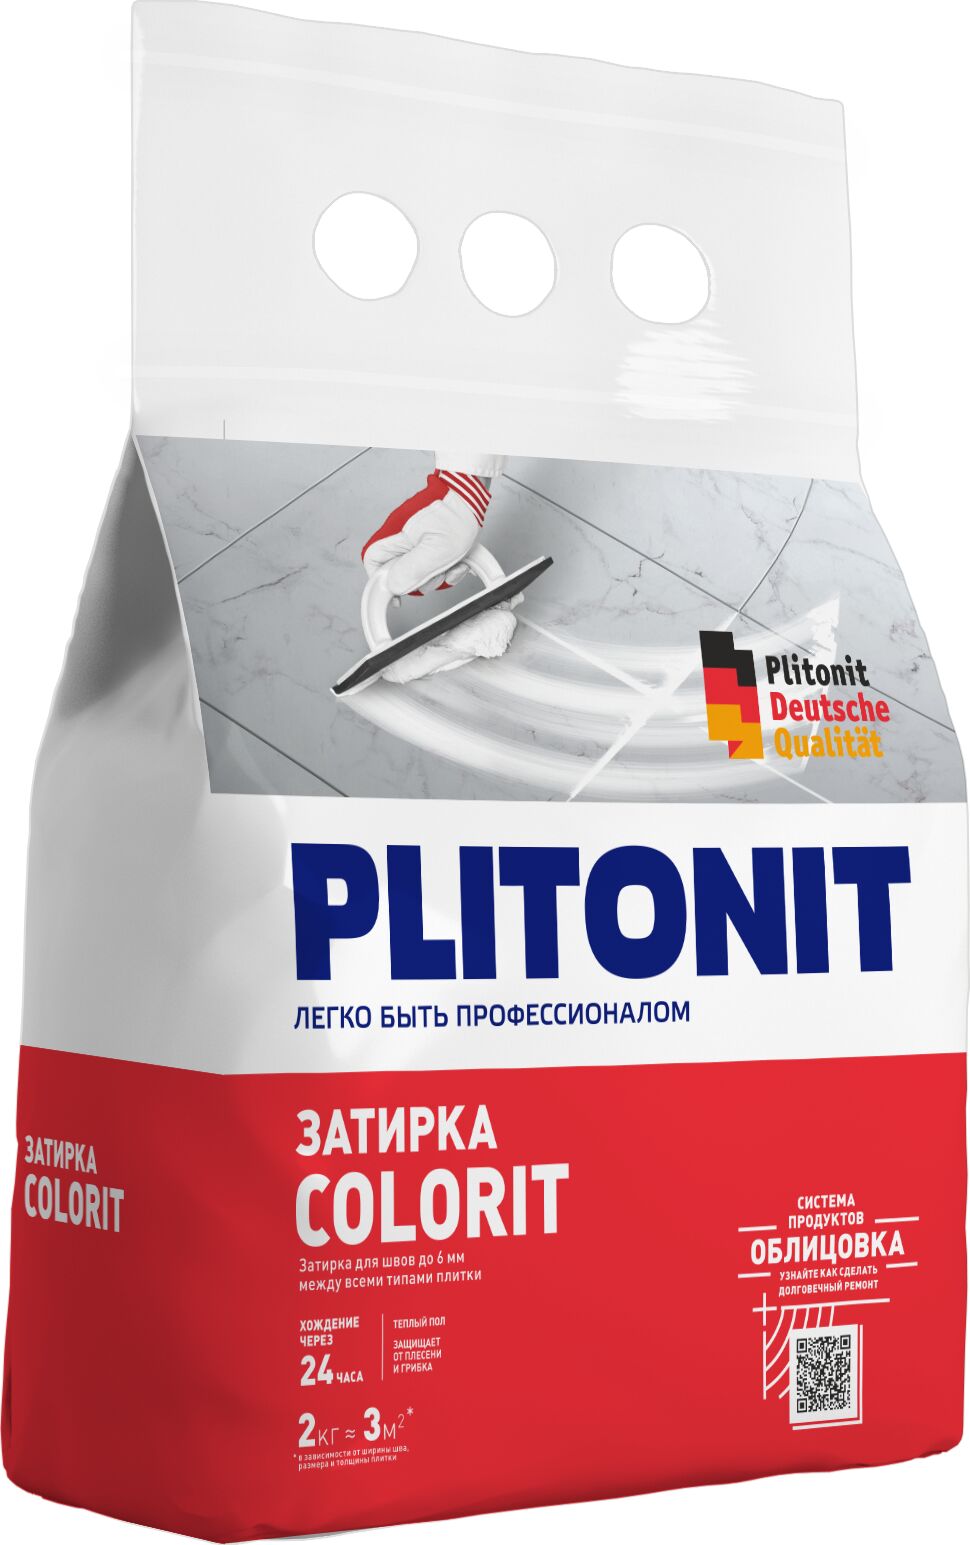 PLITONIT Colorit затирка между всеми типами плитки (1,5-6 мм) ОХРА -2 , PLITONIT Colorit затирка между всеми типами плитки (1,5-6 мм) ОХРА -2 